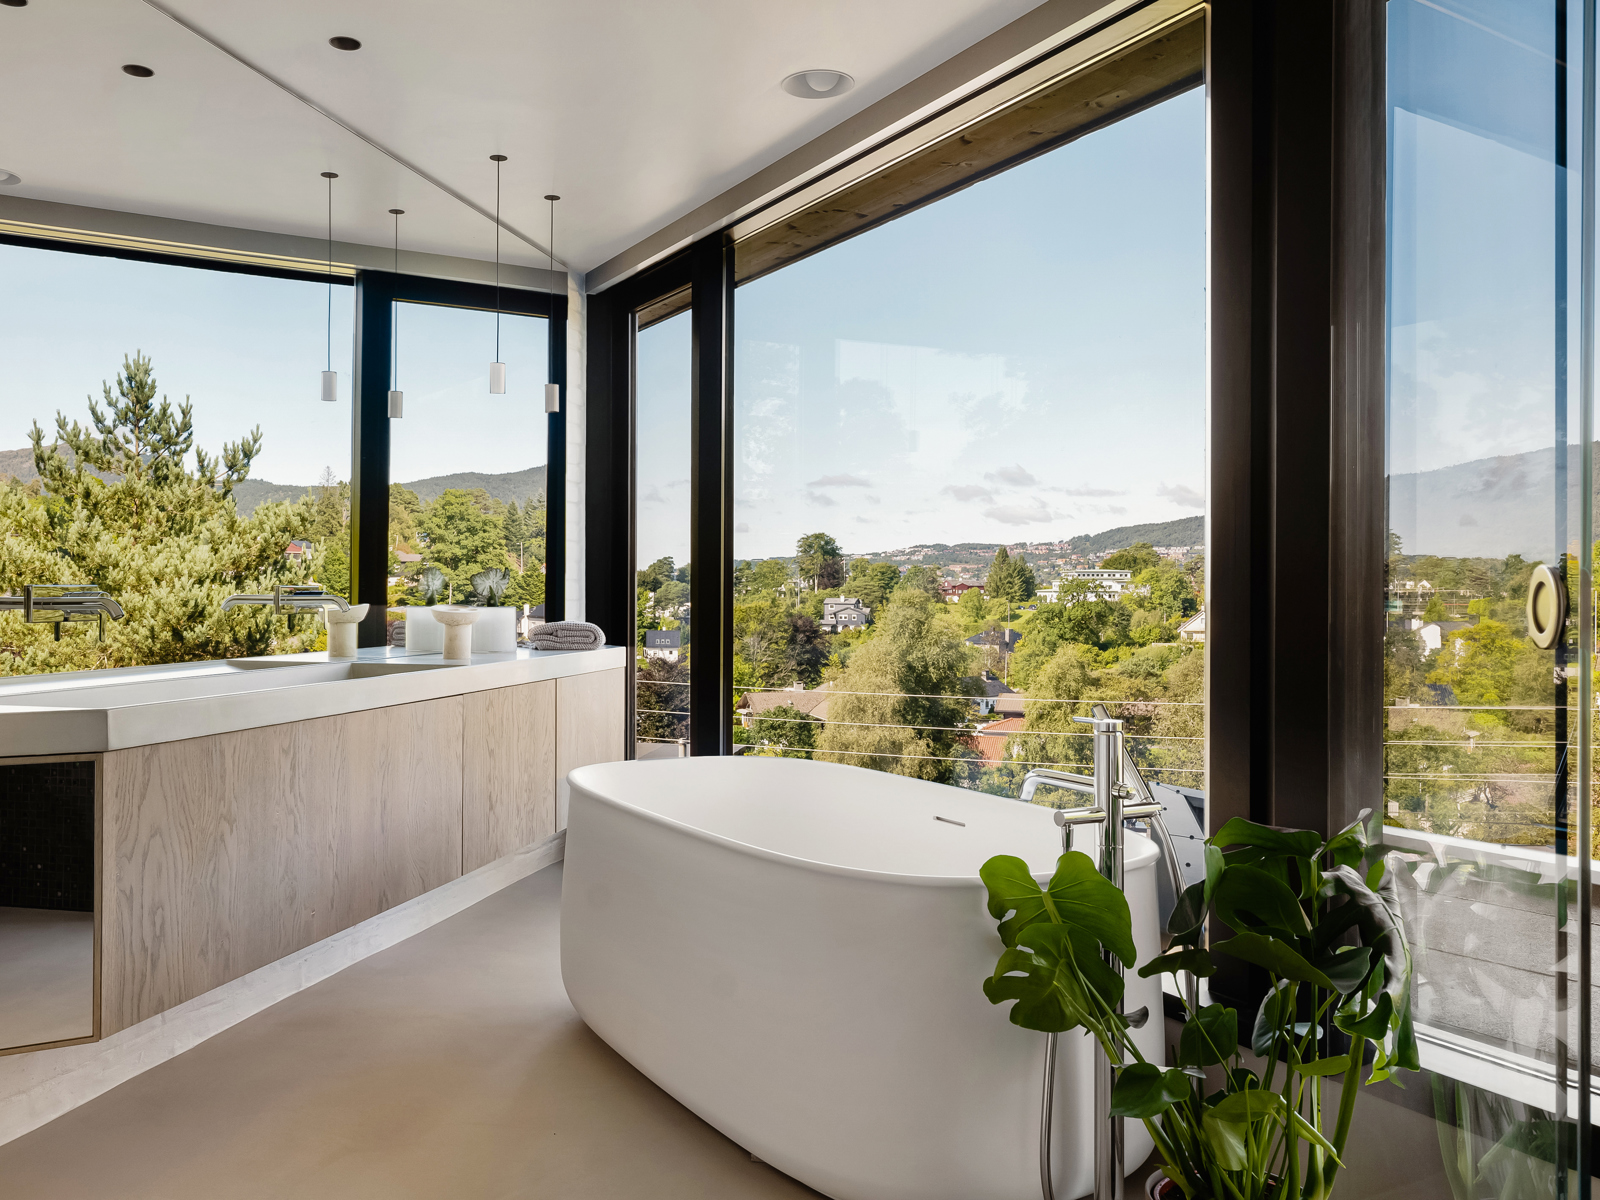 Interiør foto av baderom med glass i alle vegger, badekar og lang benk med vask.